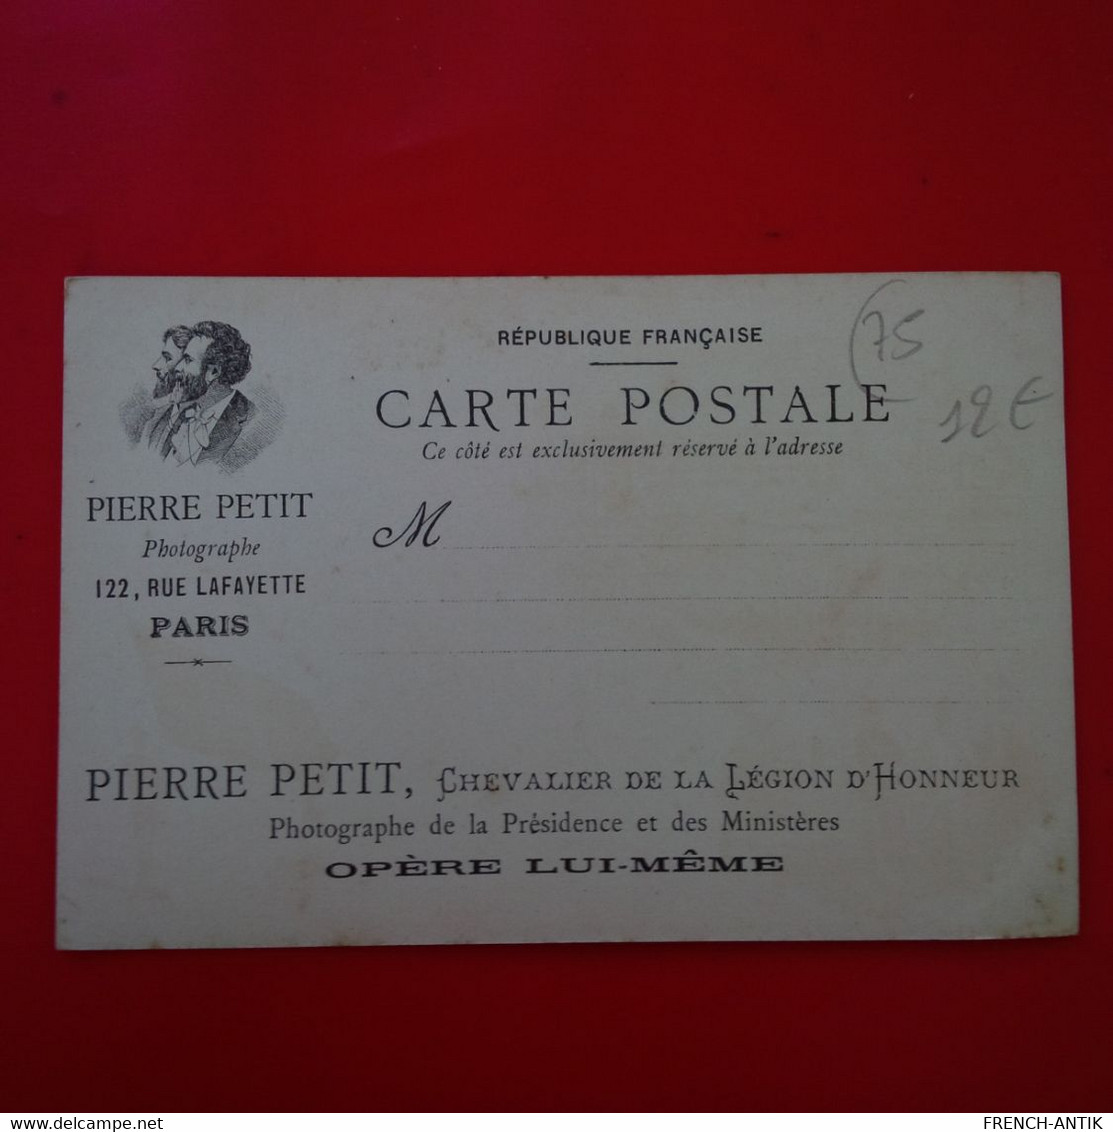 PARIS EXPOSITON DE 1900 BELGIQUE PUB PHOTOGRAPHE PIERRE PETIT - Expositions